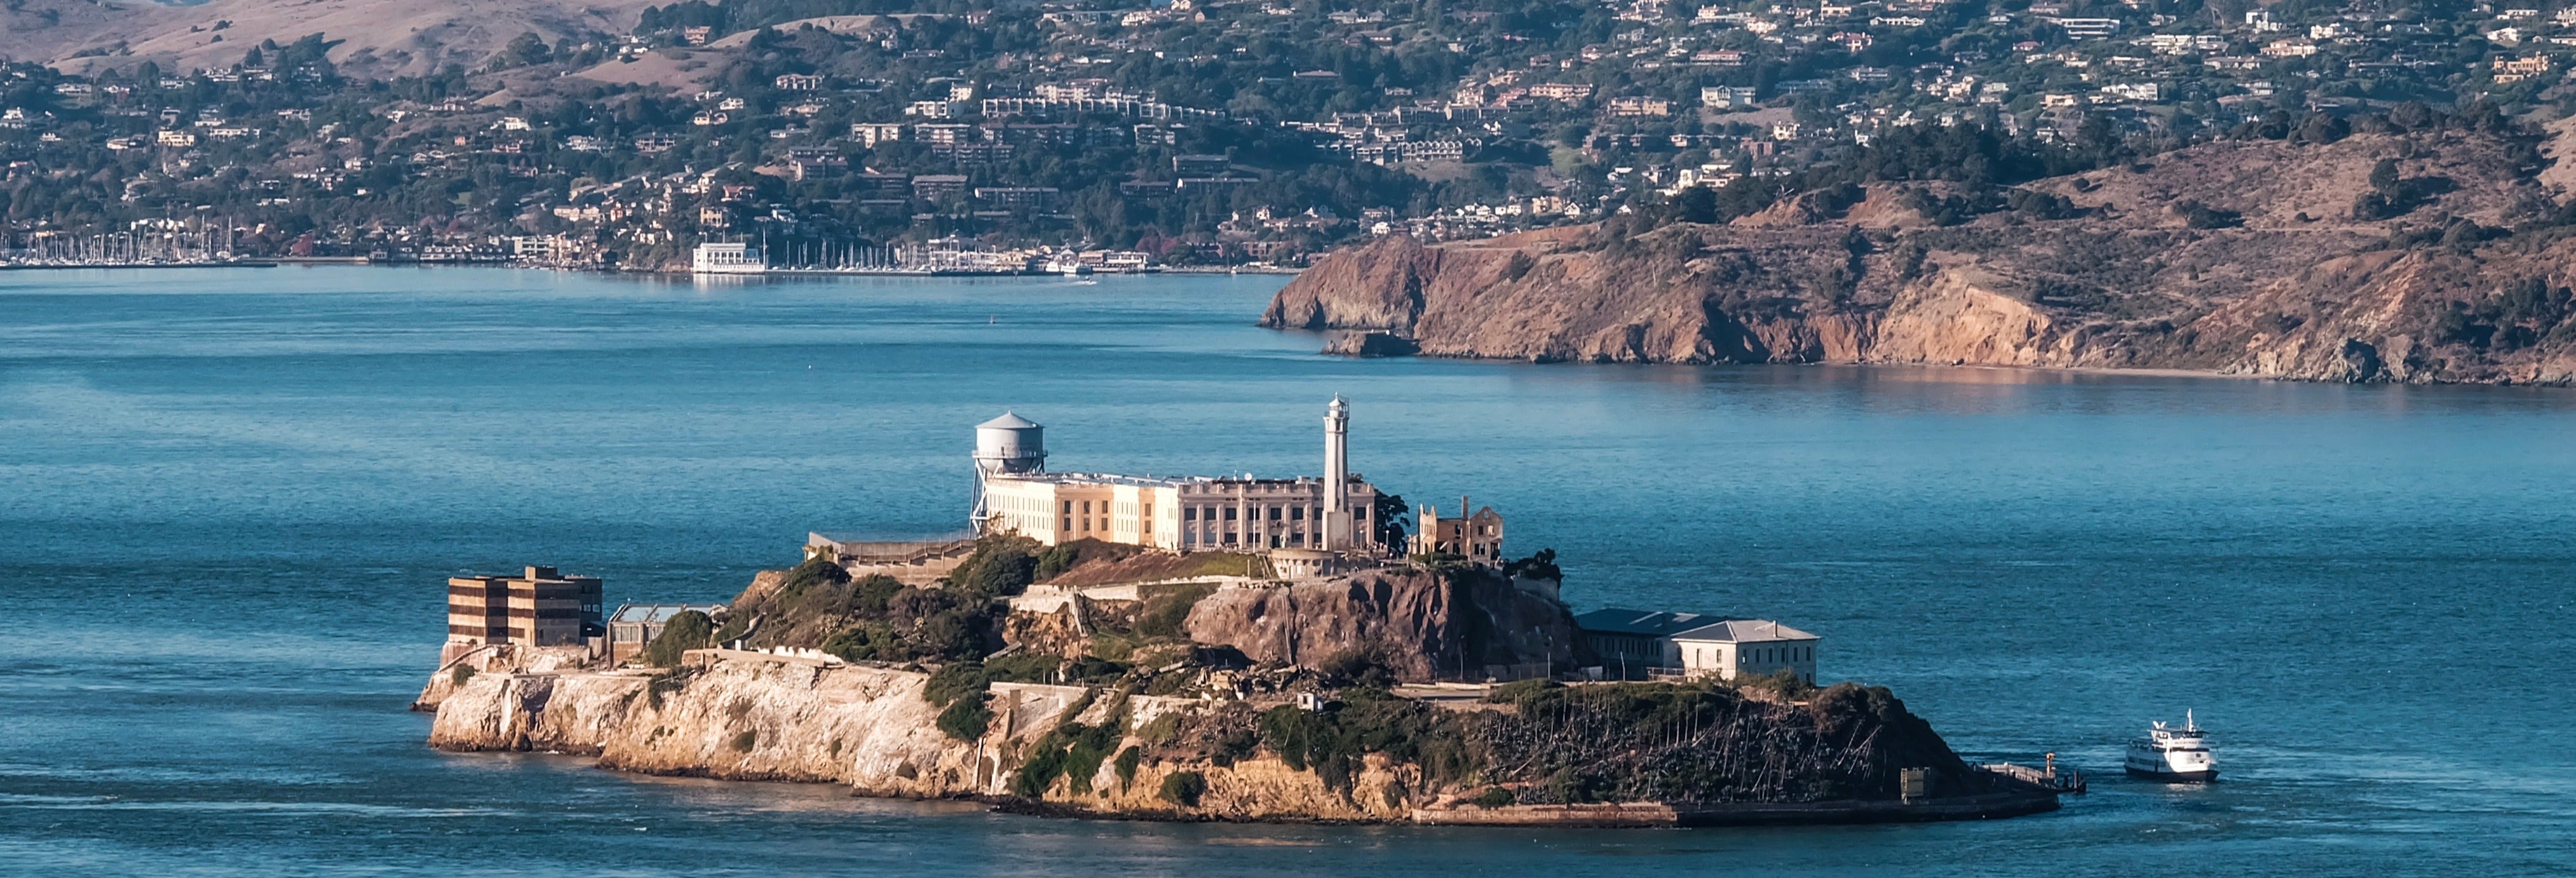 Bus touristique de San Francisco + Billet pour Alcatraz